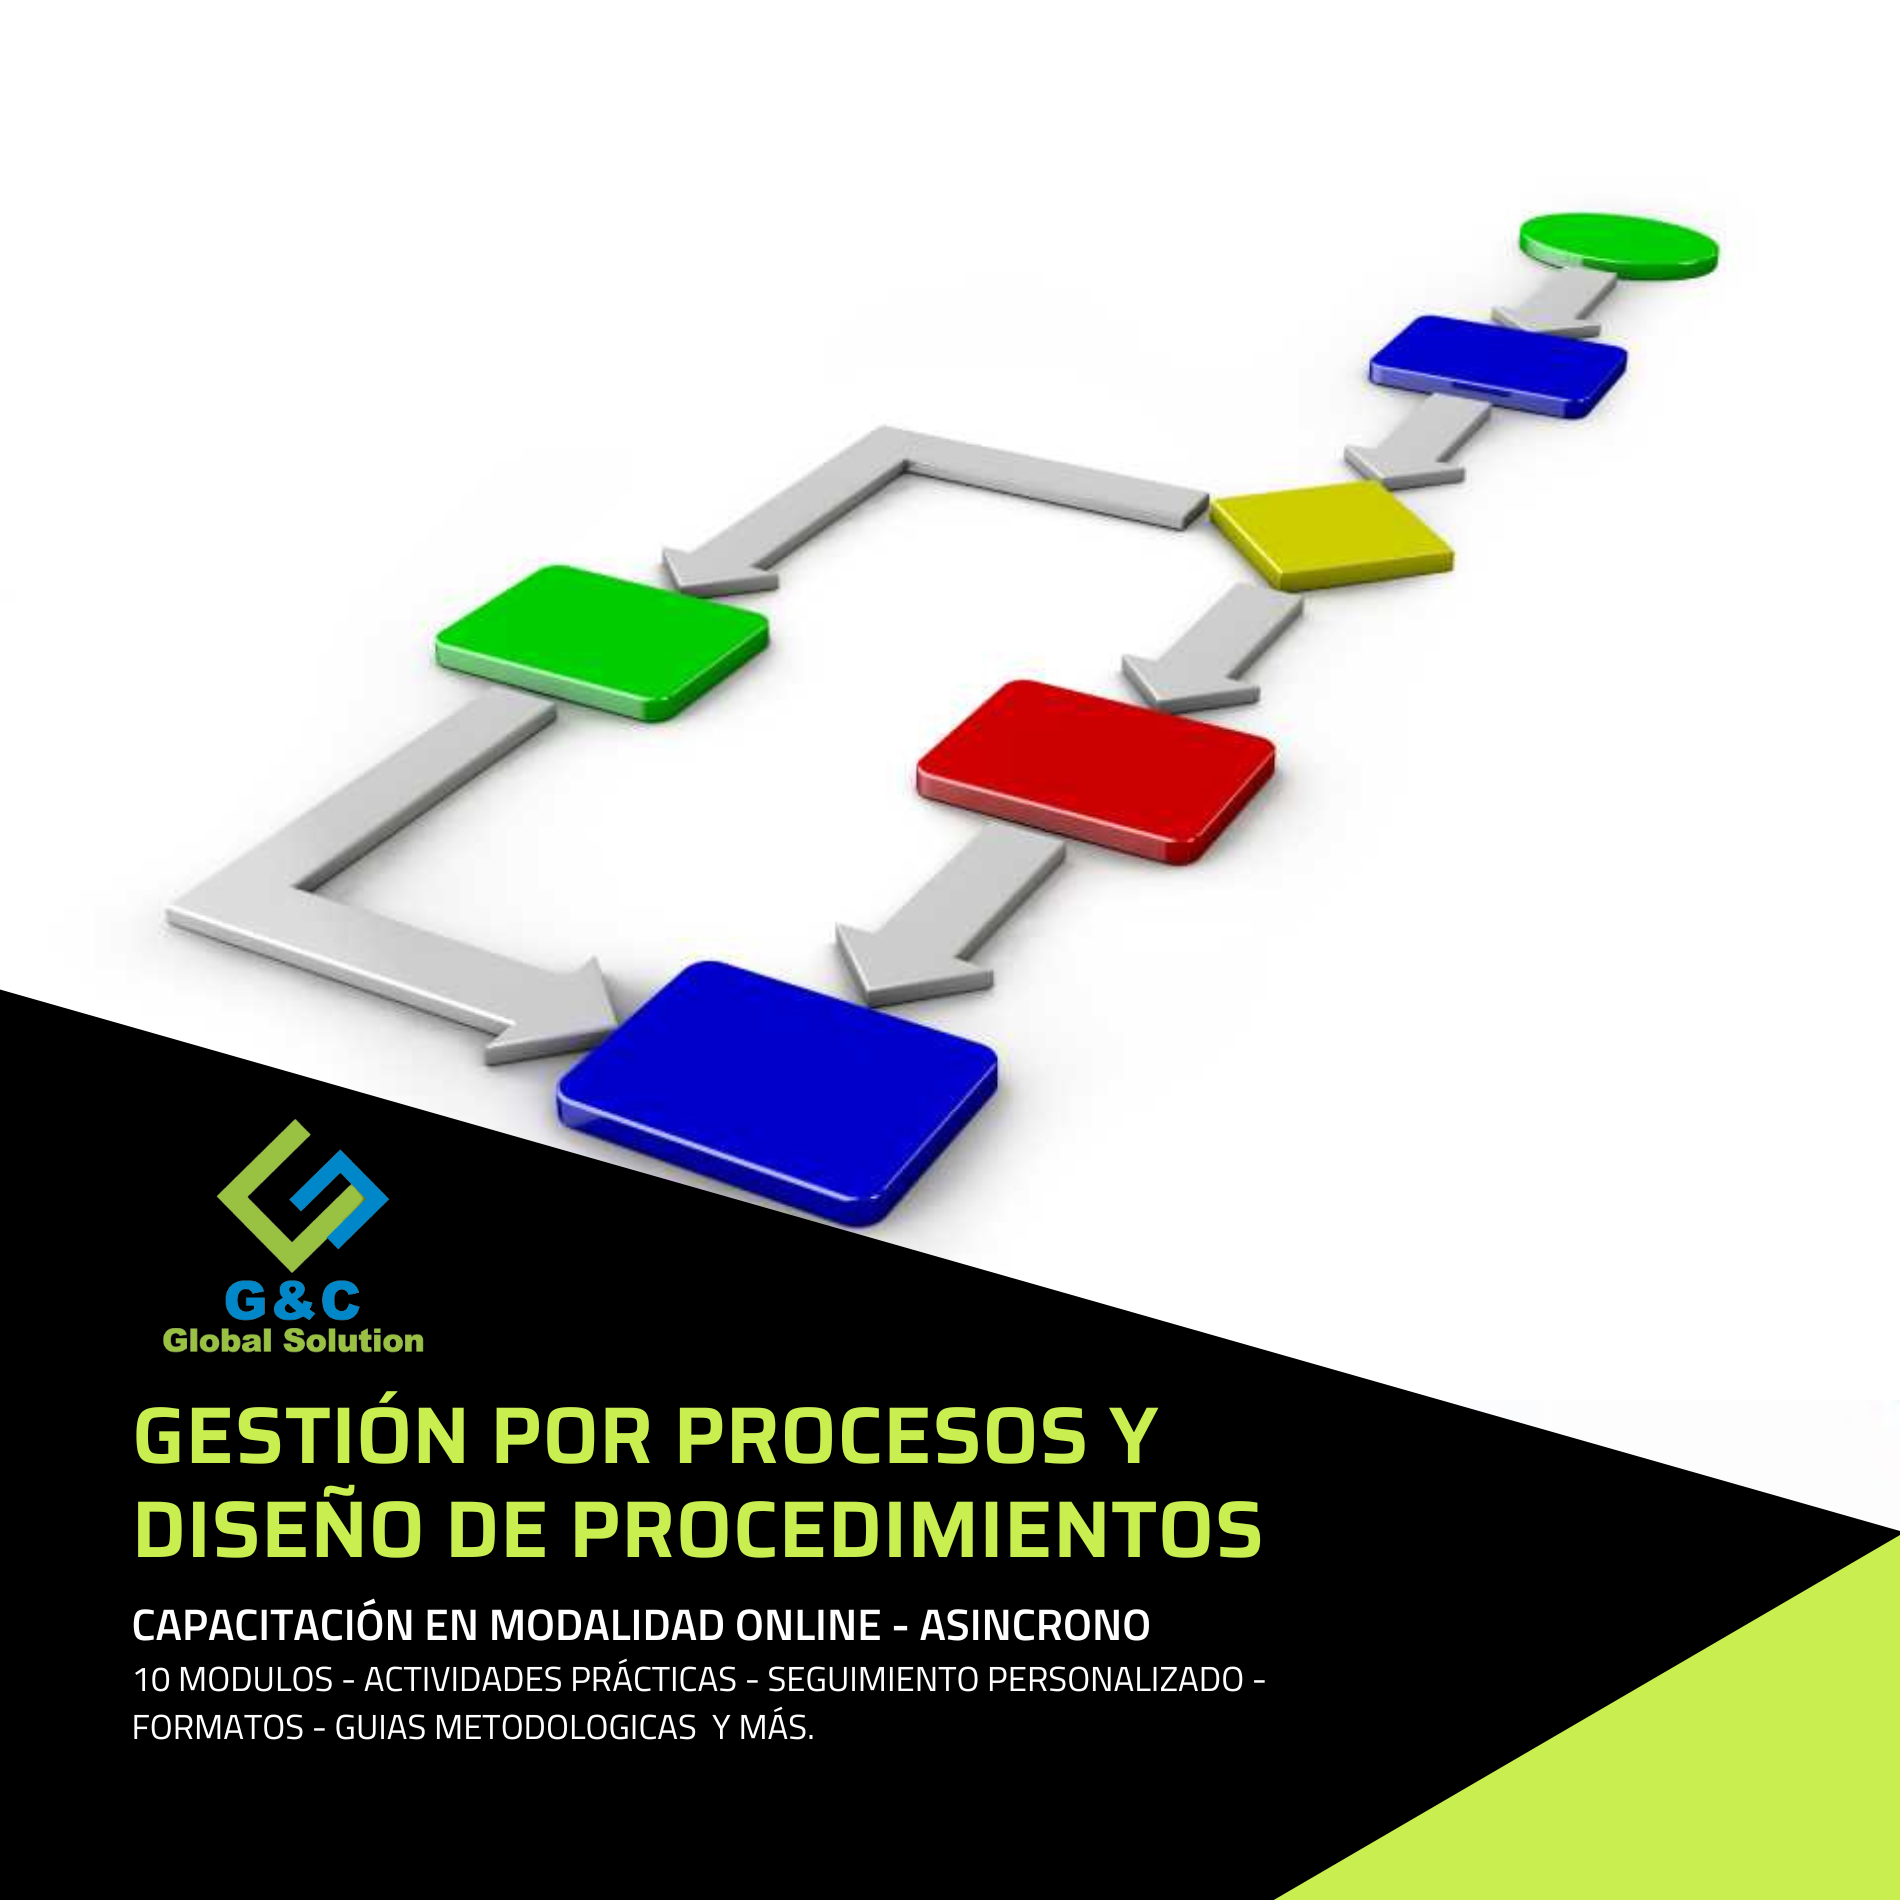 GESTION POR PROCESOS Y DISEÑO DE PROCEDIMIENTOS - Online Asincrono.  (Nueva versión)